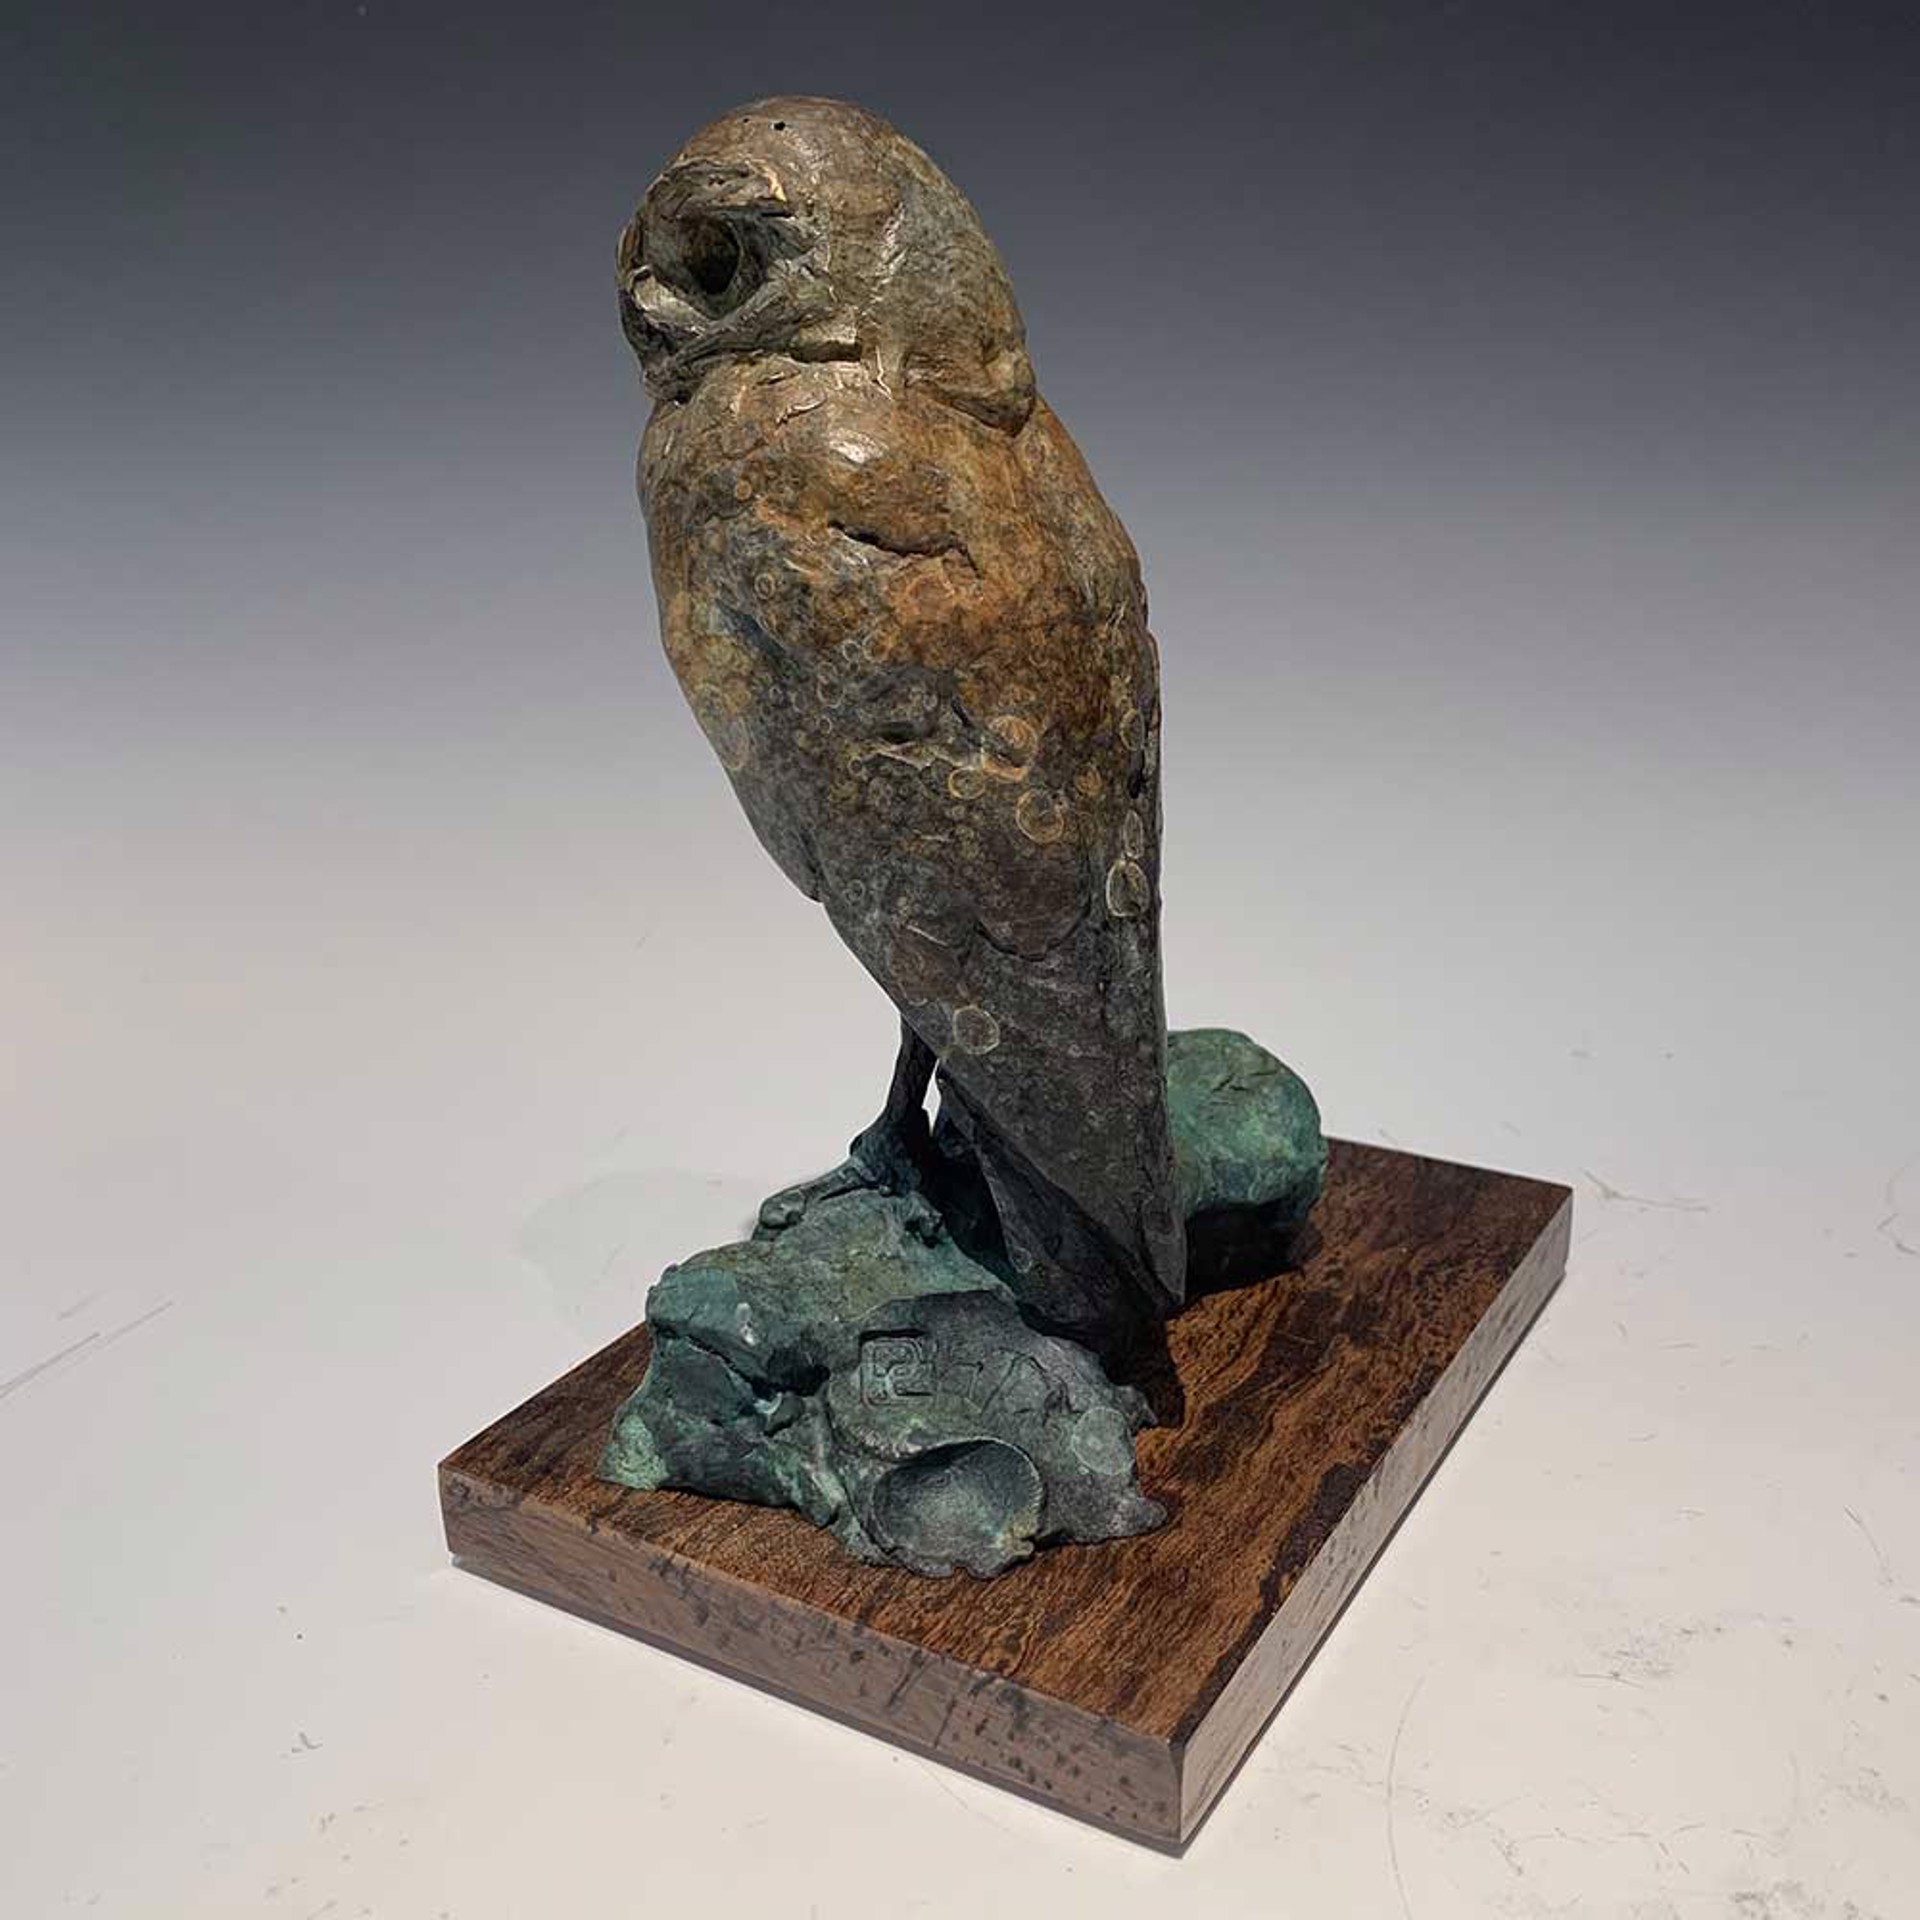 Burrowing Owl by Dan Chen